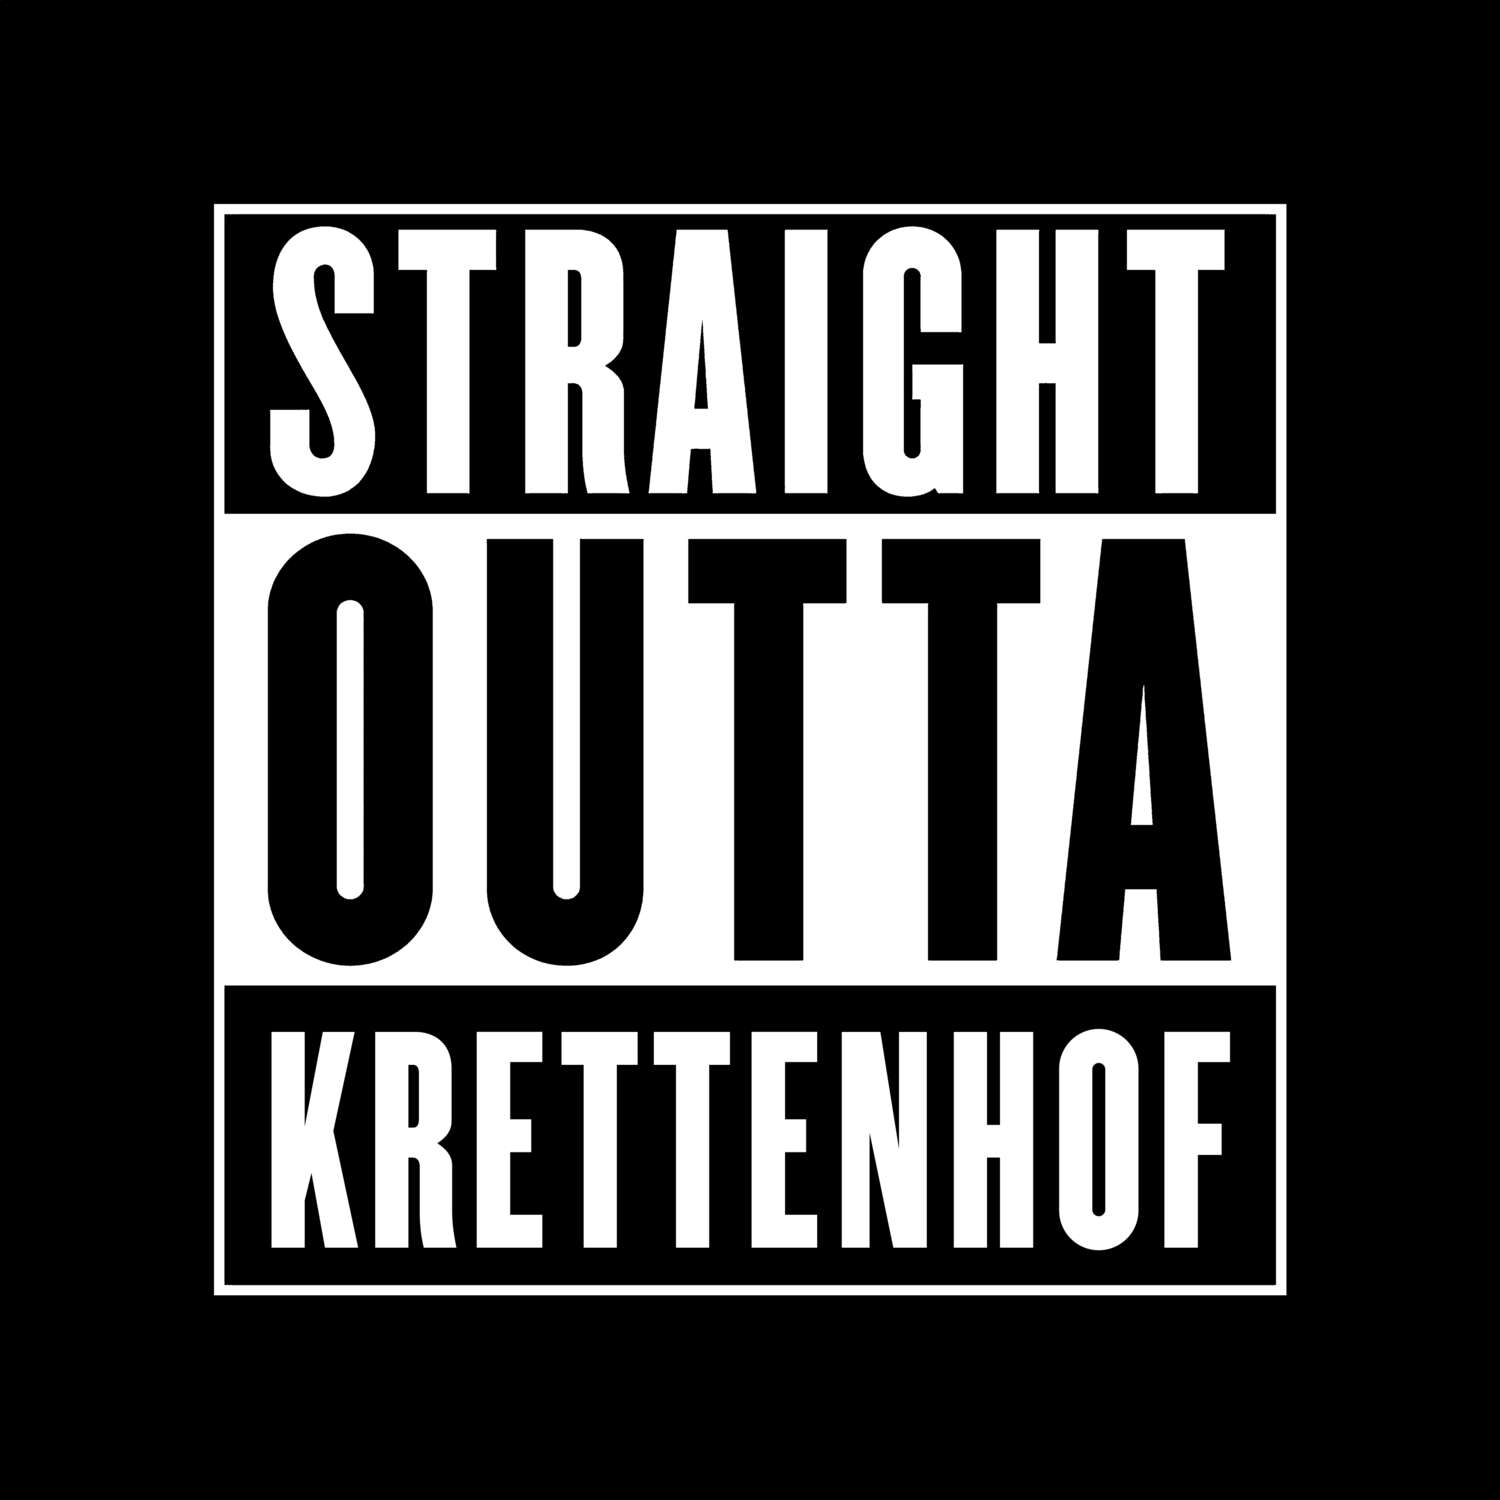 Krettenhof T-Shirt »Straight Outta«